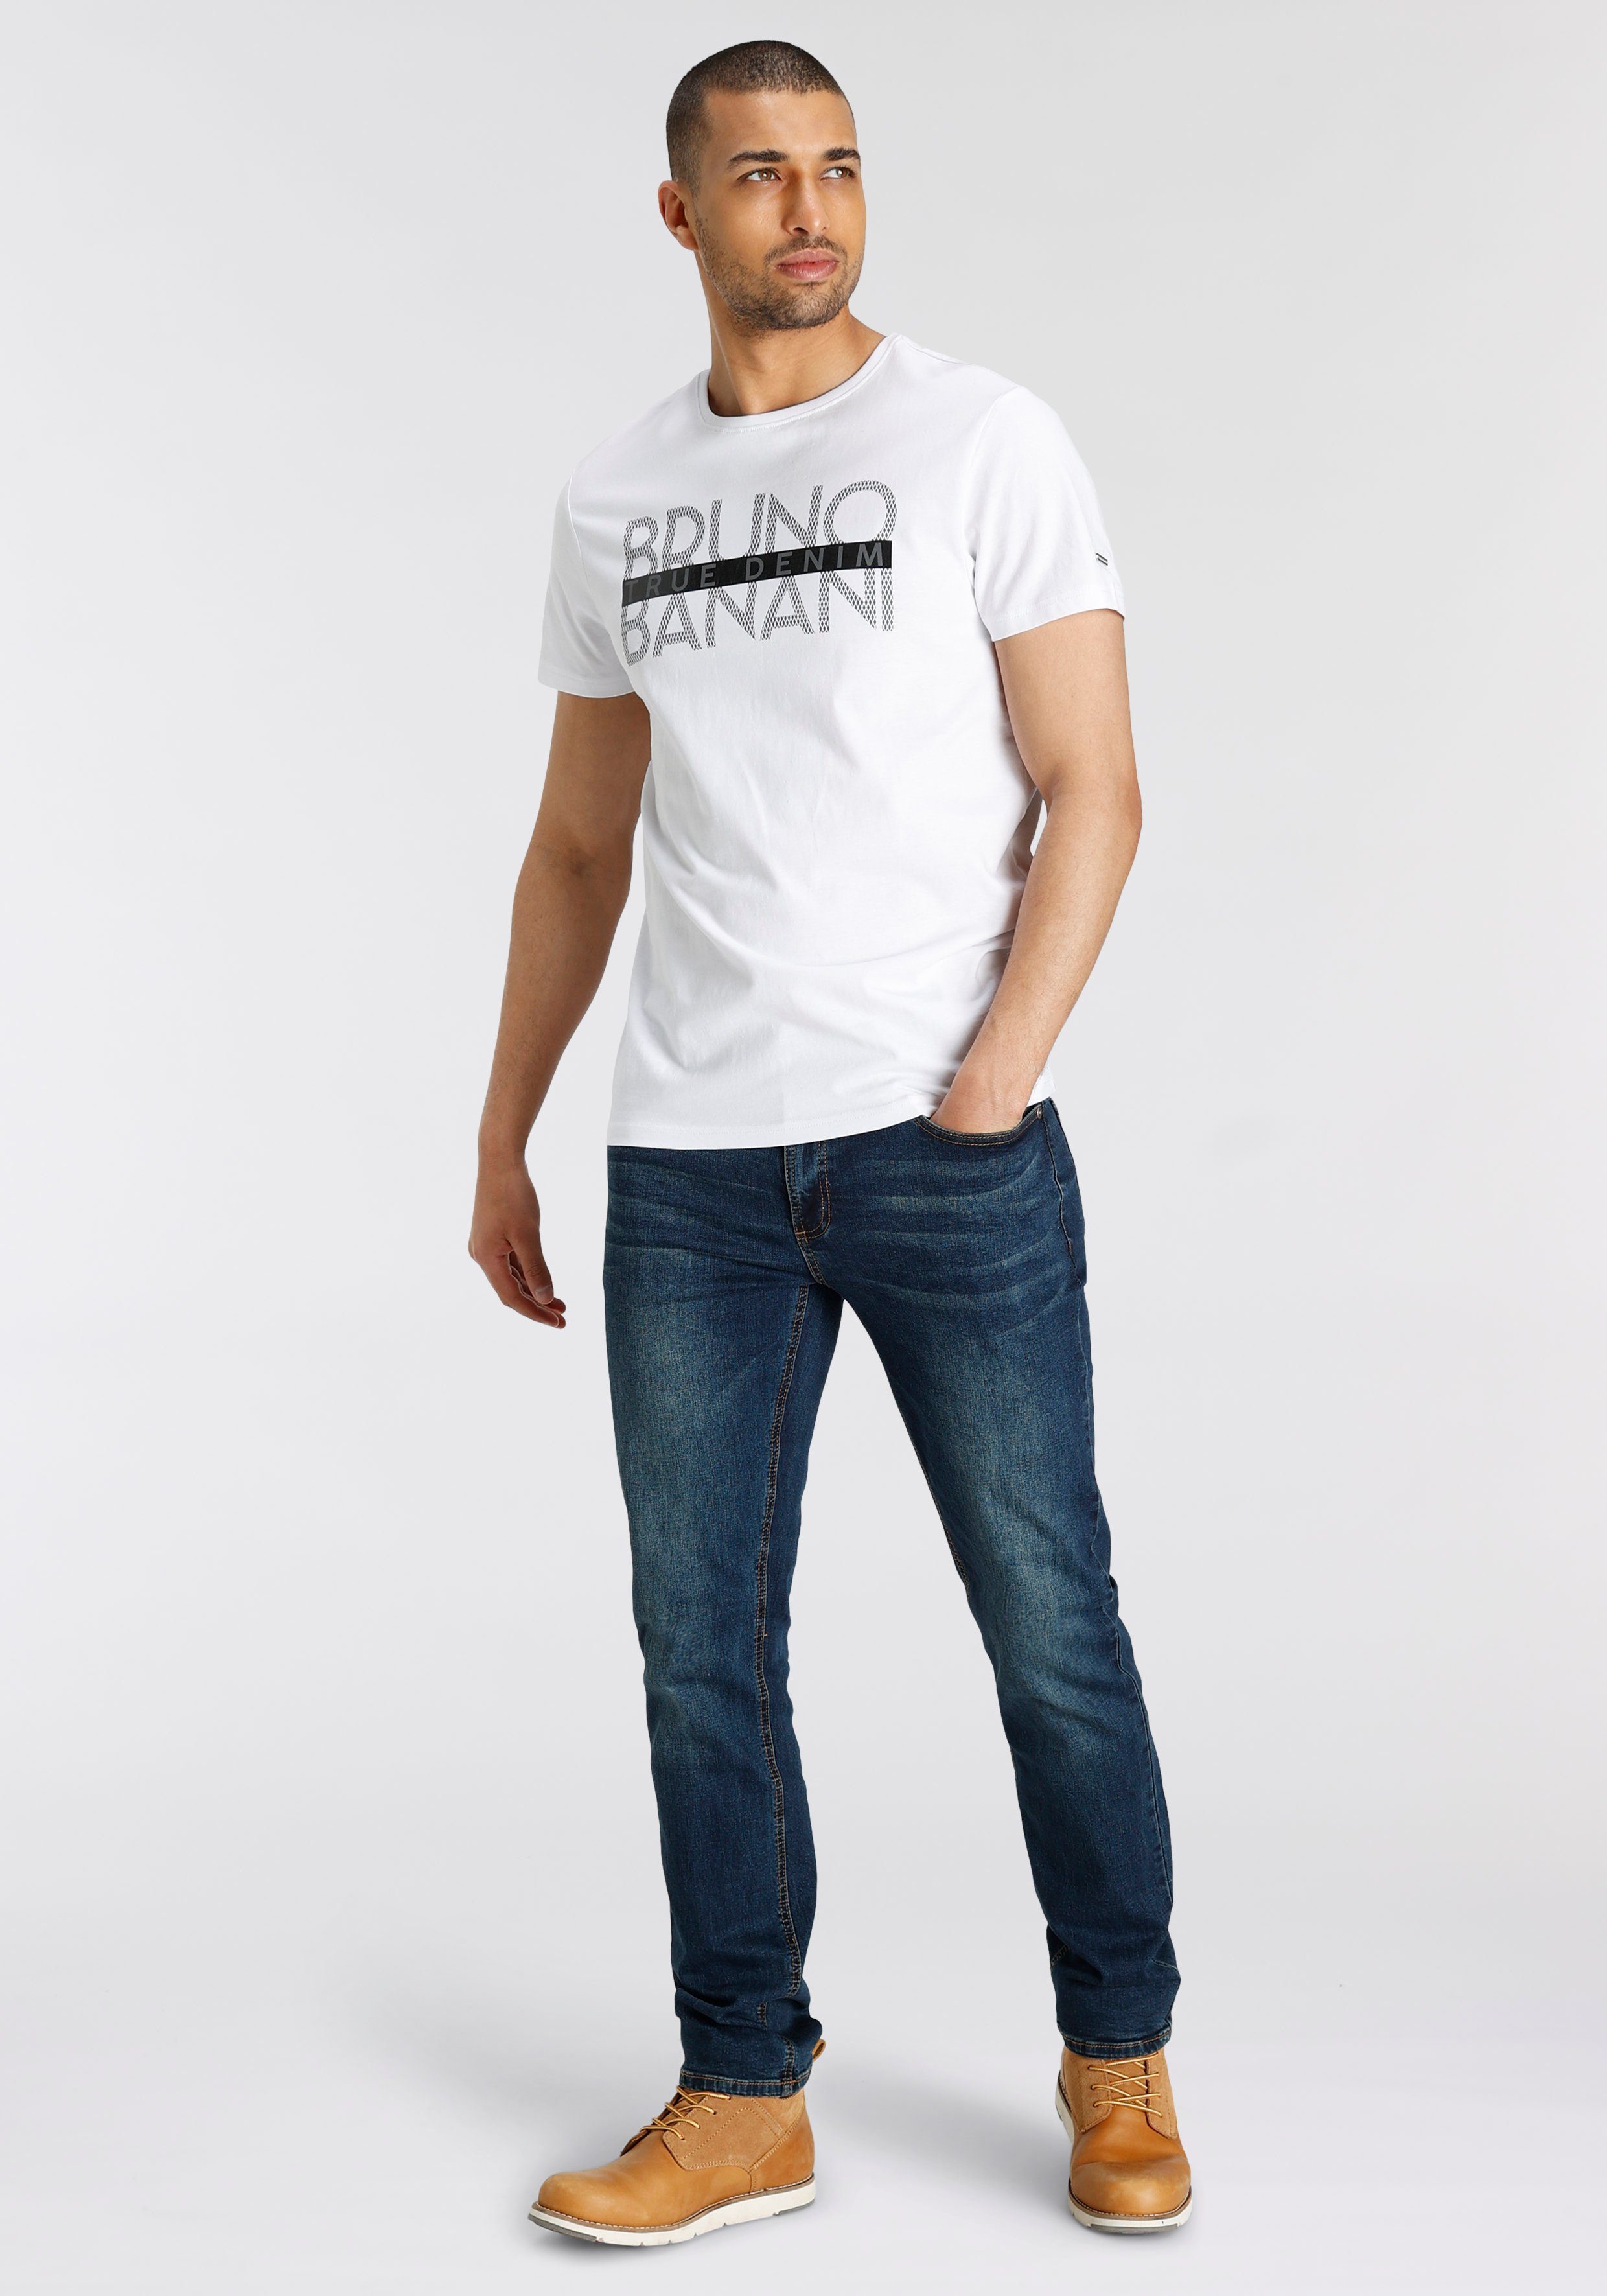 Bruno Banani T-Shirt glänzendem mit weiß Print